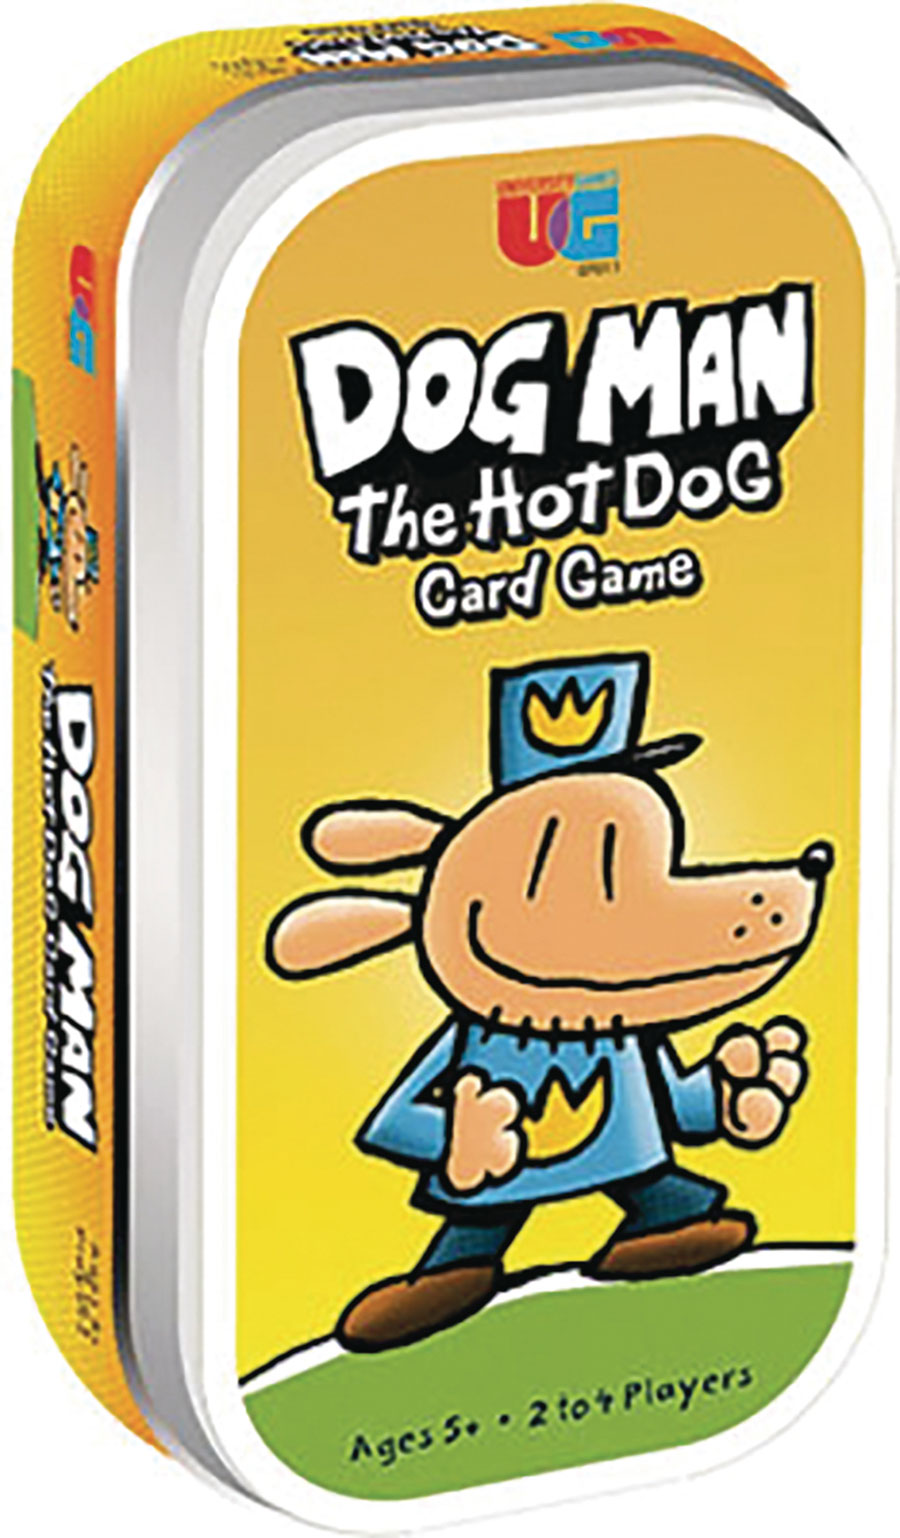 Dog Man Hot Dog Card Game